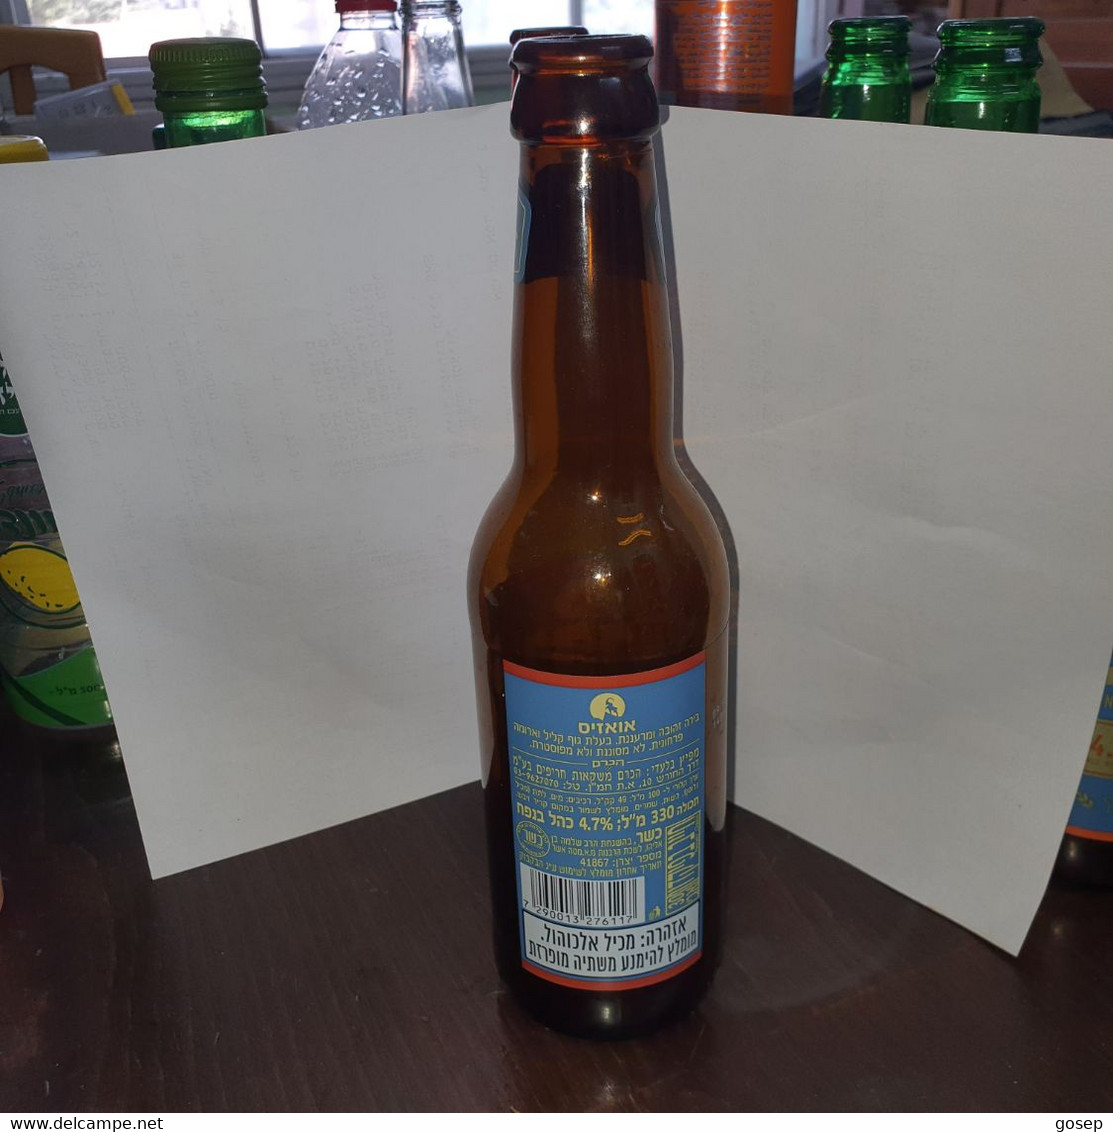 Israel-beer Bottle-negev Craft Beer-oasis-(4.7%)-(330ml) - Beer